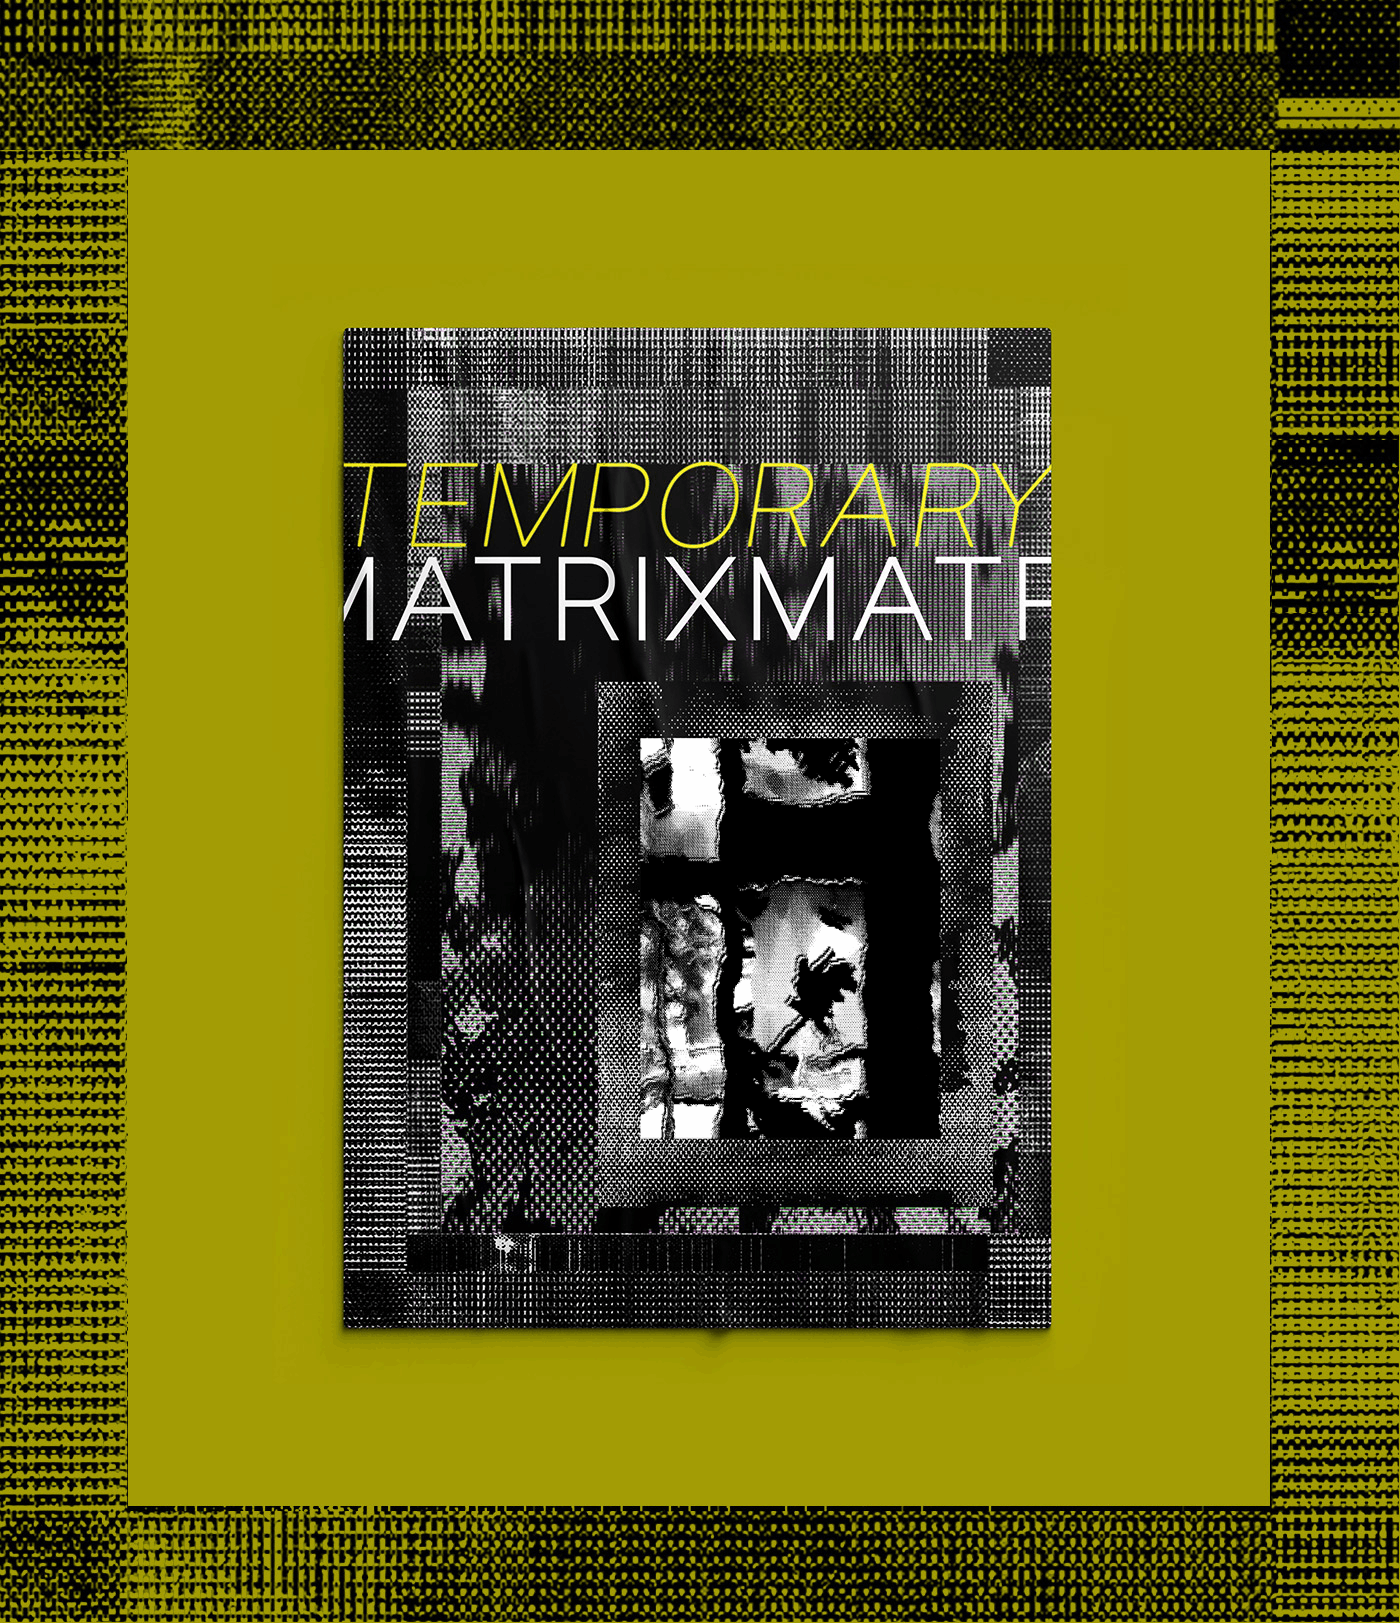 design Glitch matrix poster temporaty